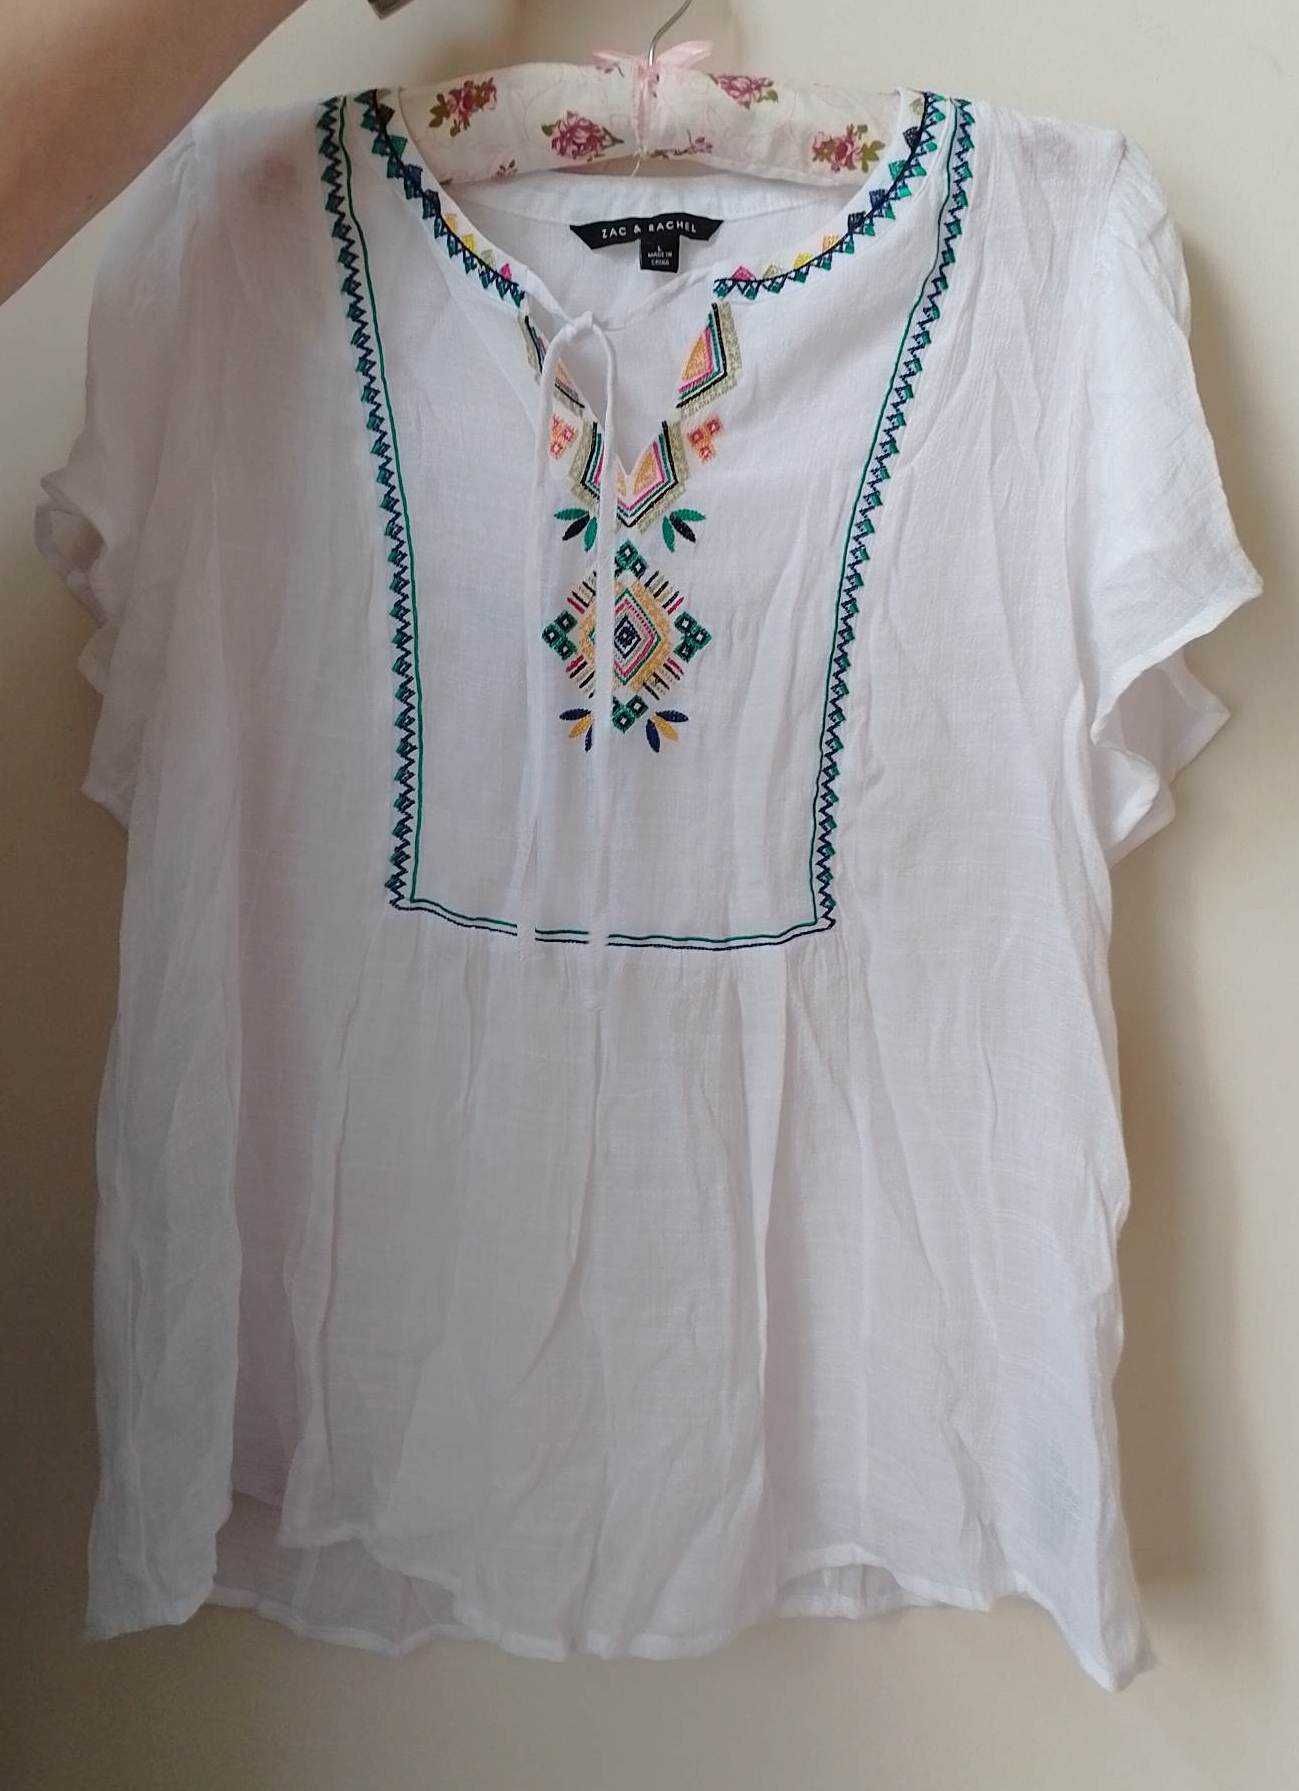 Жіноча вишита сорочка Zac & Rachel (Нова), Розмір - L , ціна - 499 грн